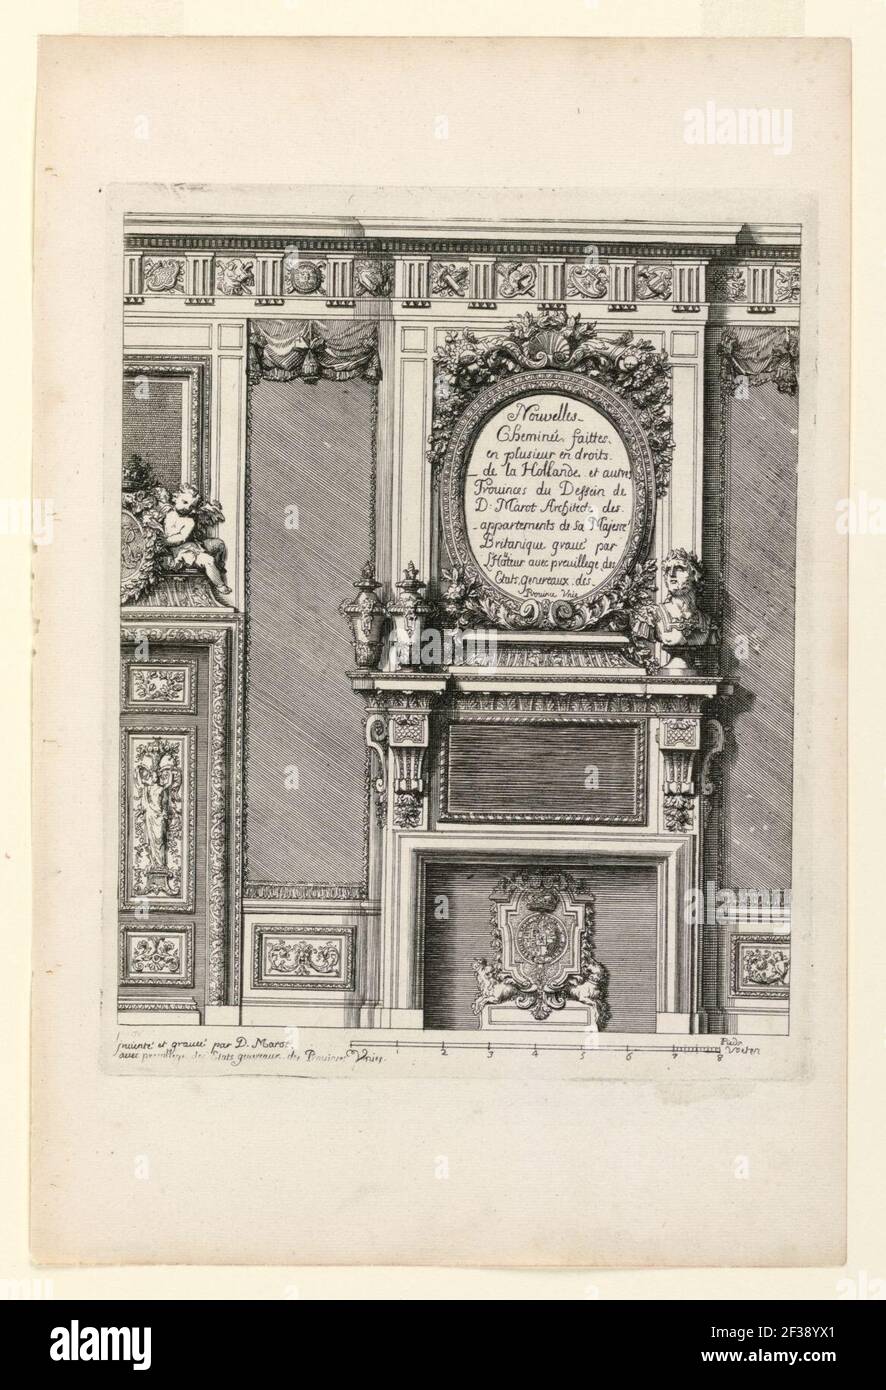 Print, Title Page, Nouvelles Cheminée faittes en plusieur en droits (New Designs for Fireplaces), ca. 1700 Stock Photo